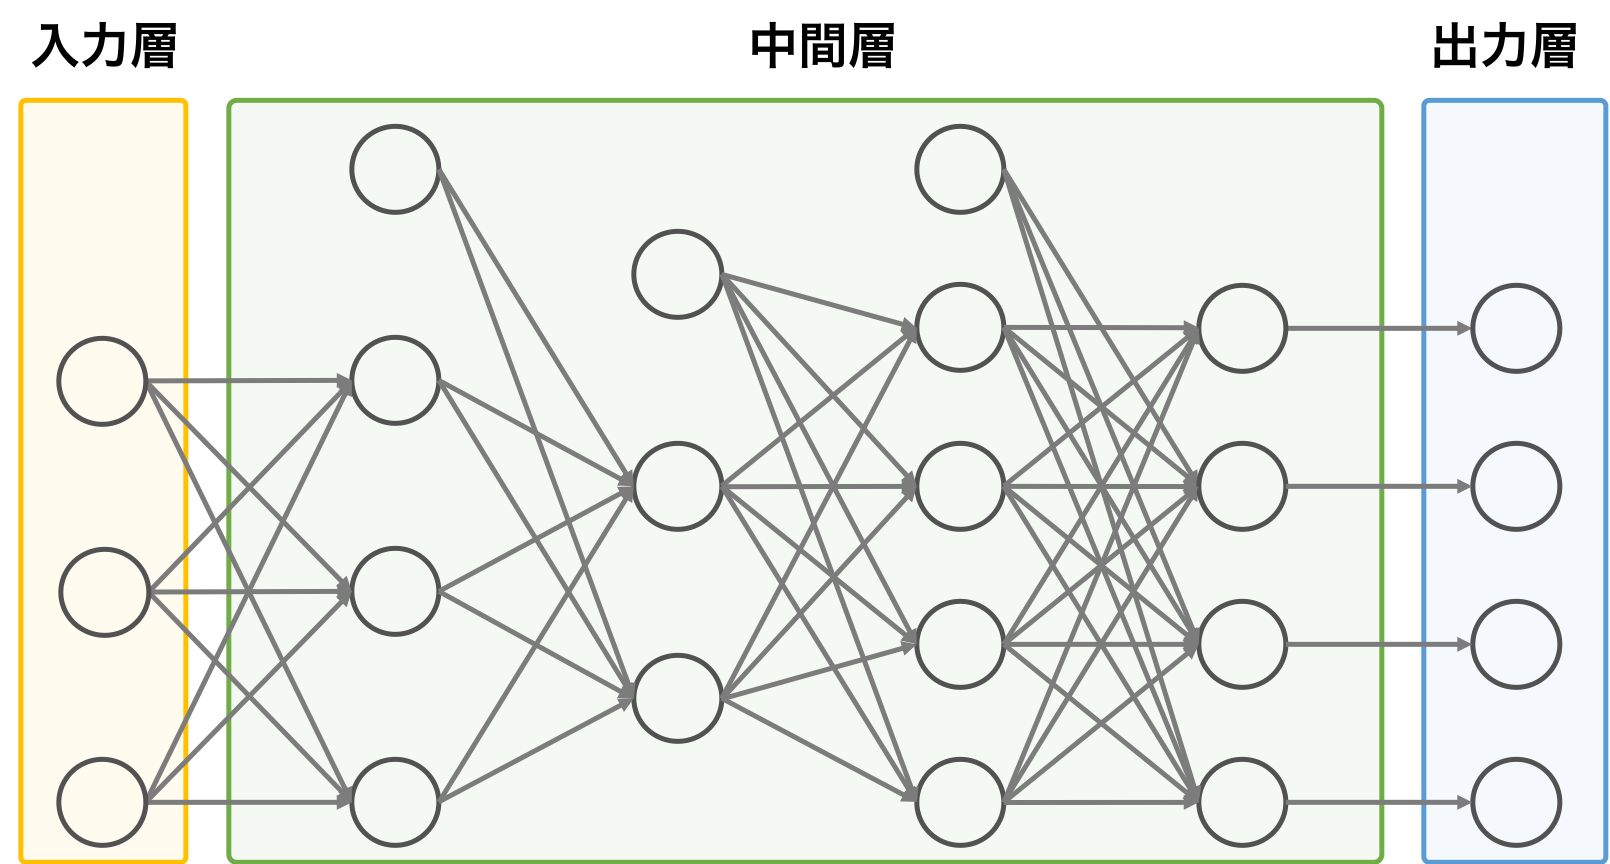 ディープニューラルネットワークの構造